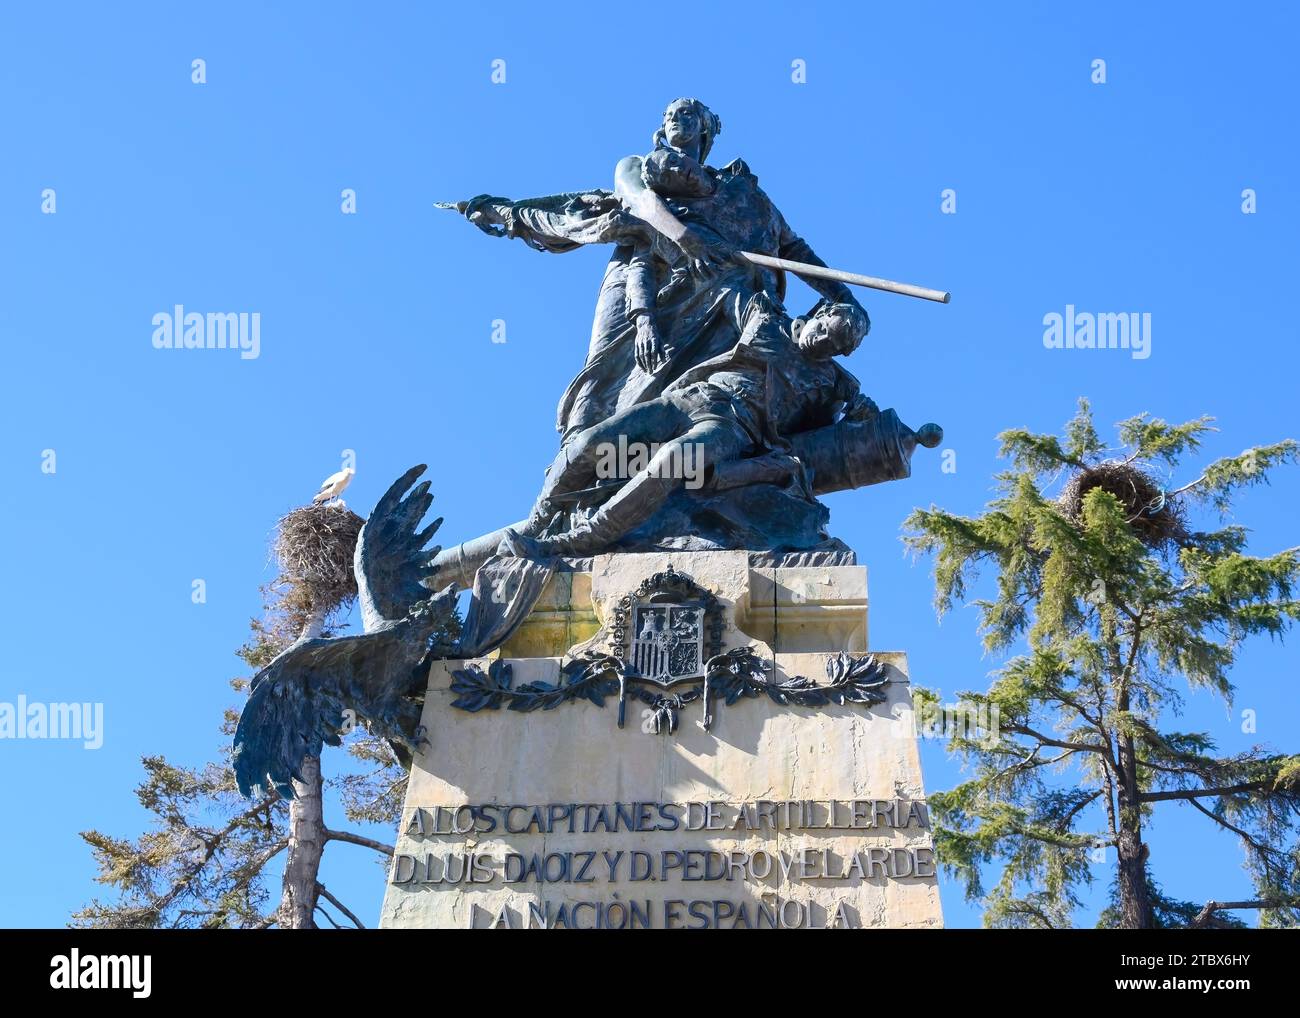 Vue à angle bas d'une statue en métal sur le dessus d'un pilier de pierre. Élément ou détail dans la sculpture D. Luis Daoiz y Dom Pedro Velarde Banque D'Images